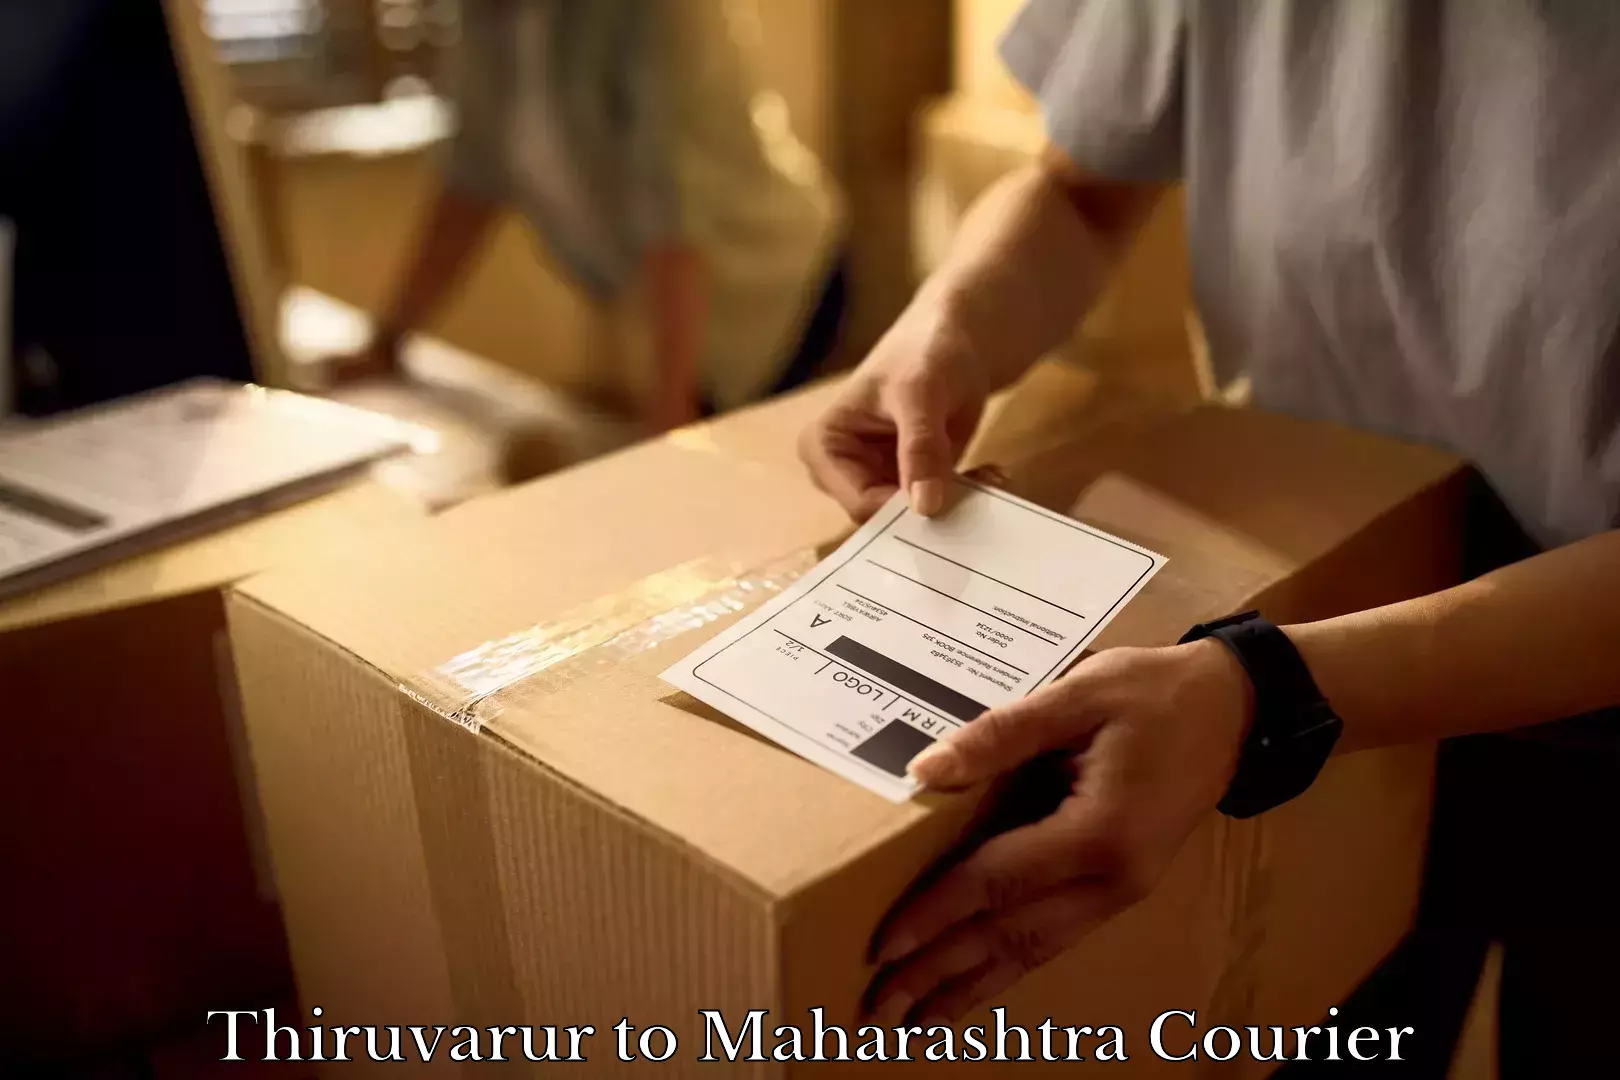 Furniture moving experts Thiruvarur to Maharashtra